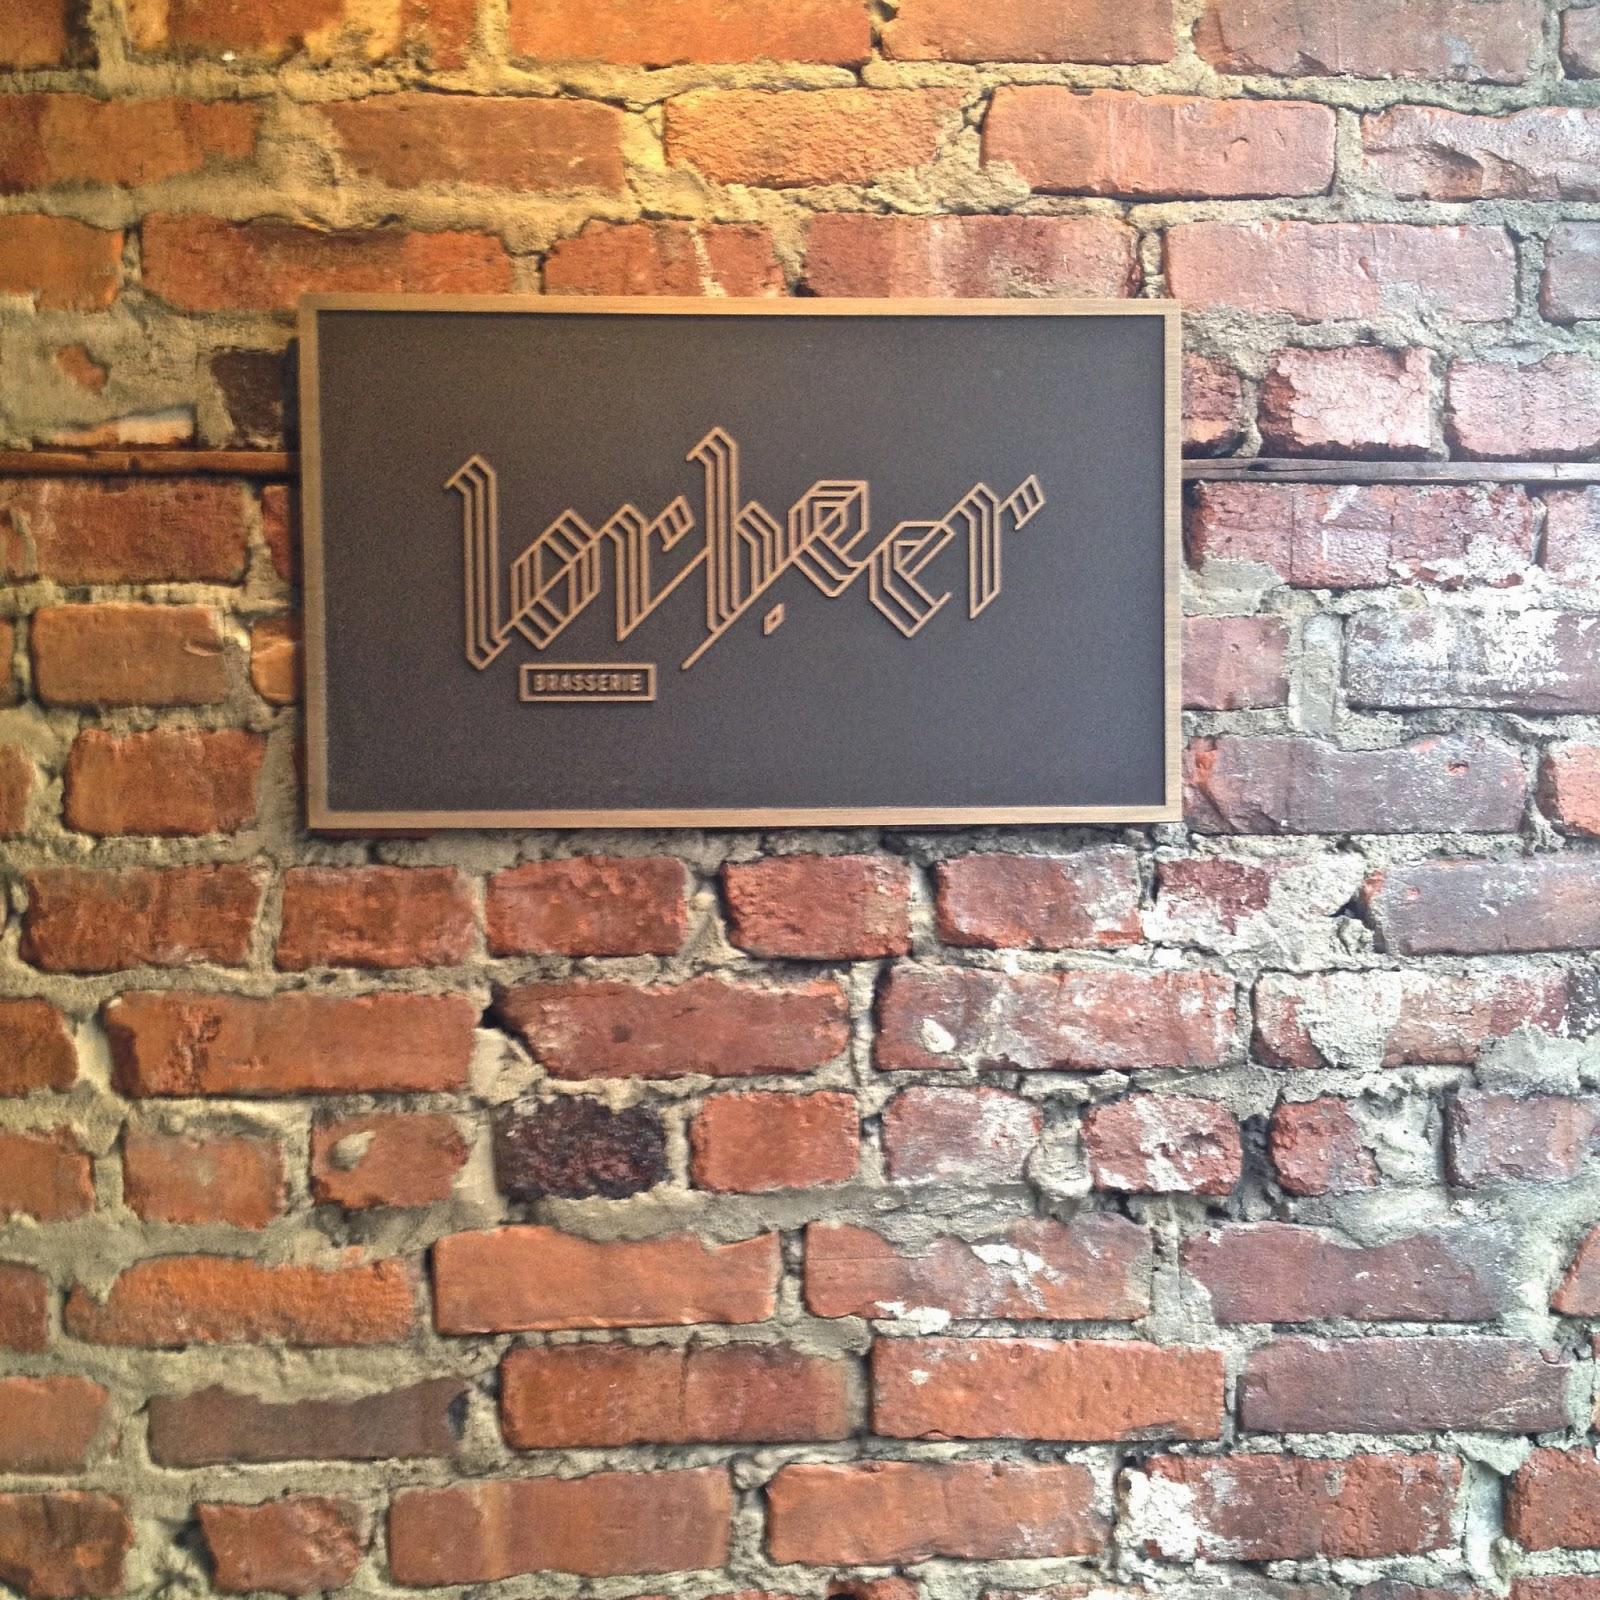 Lorbeer : la brasserie urbaine pour vos 5@7 #beertails